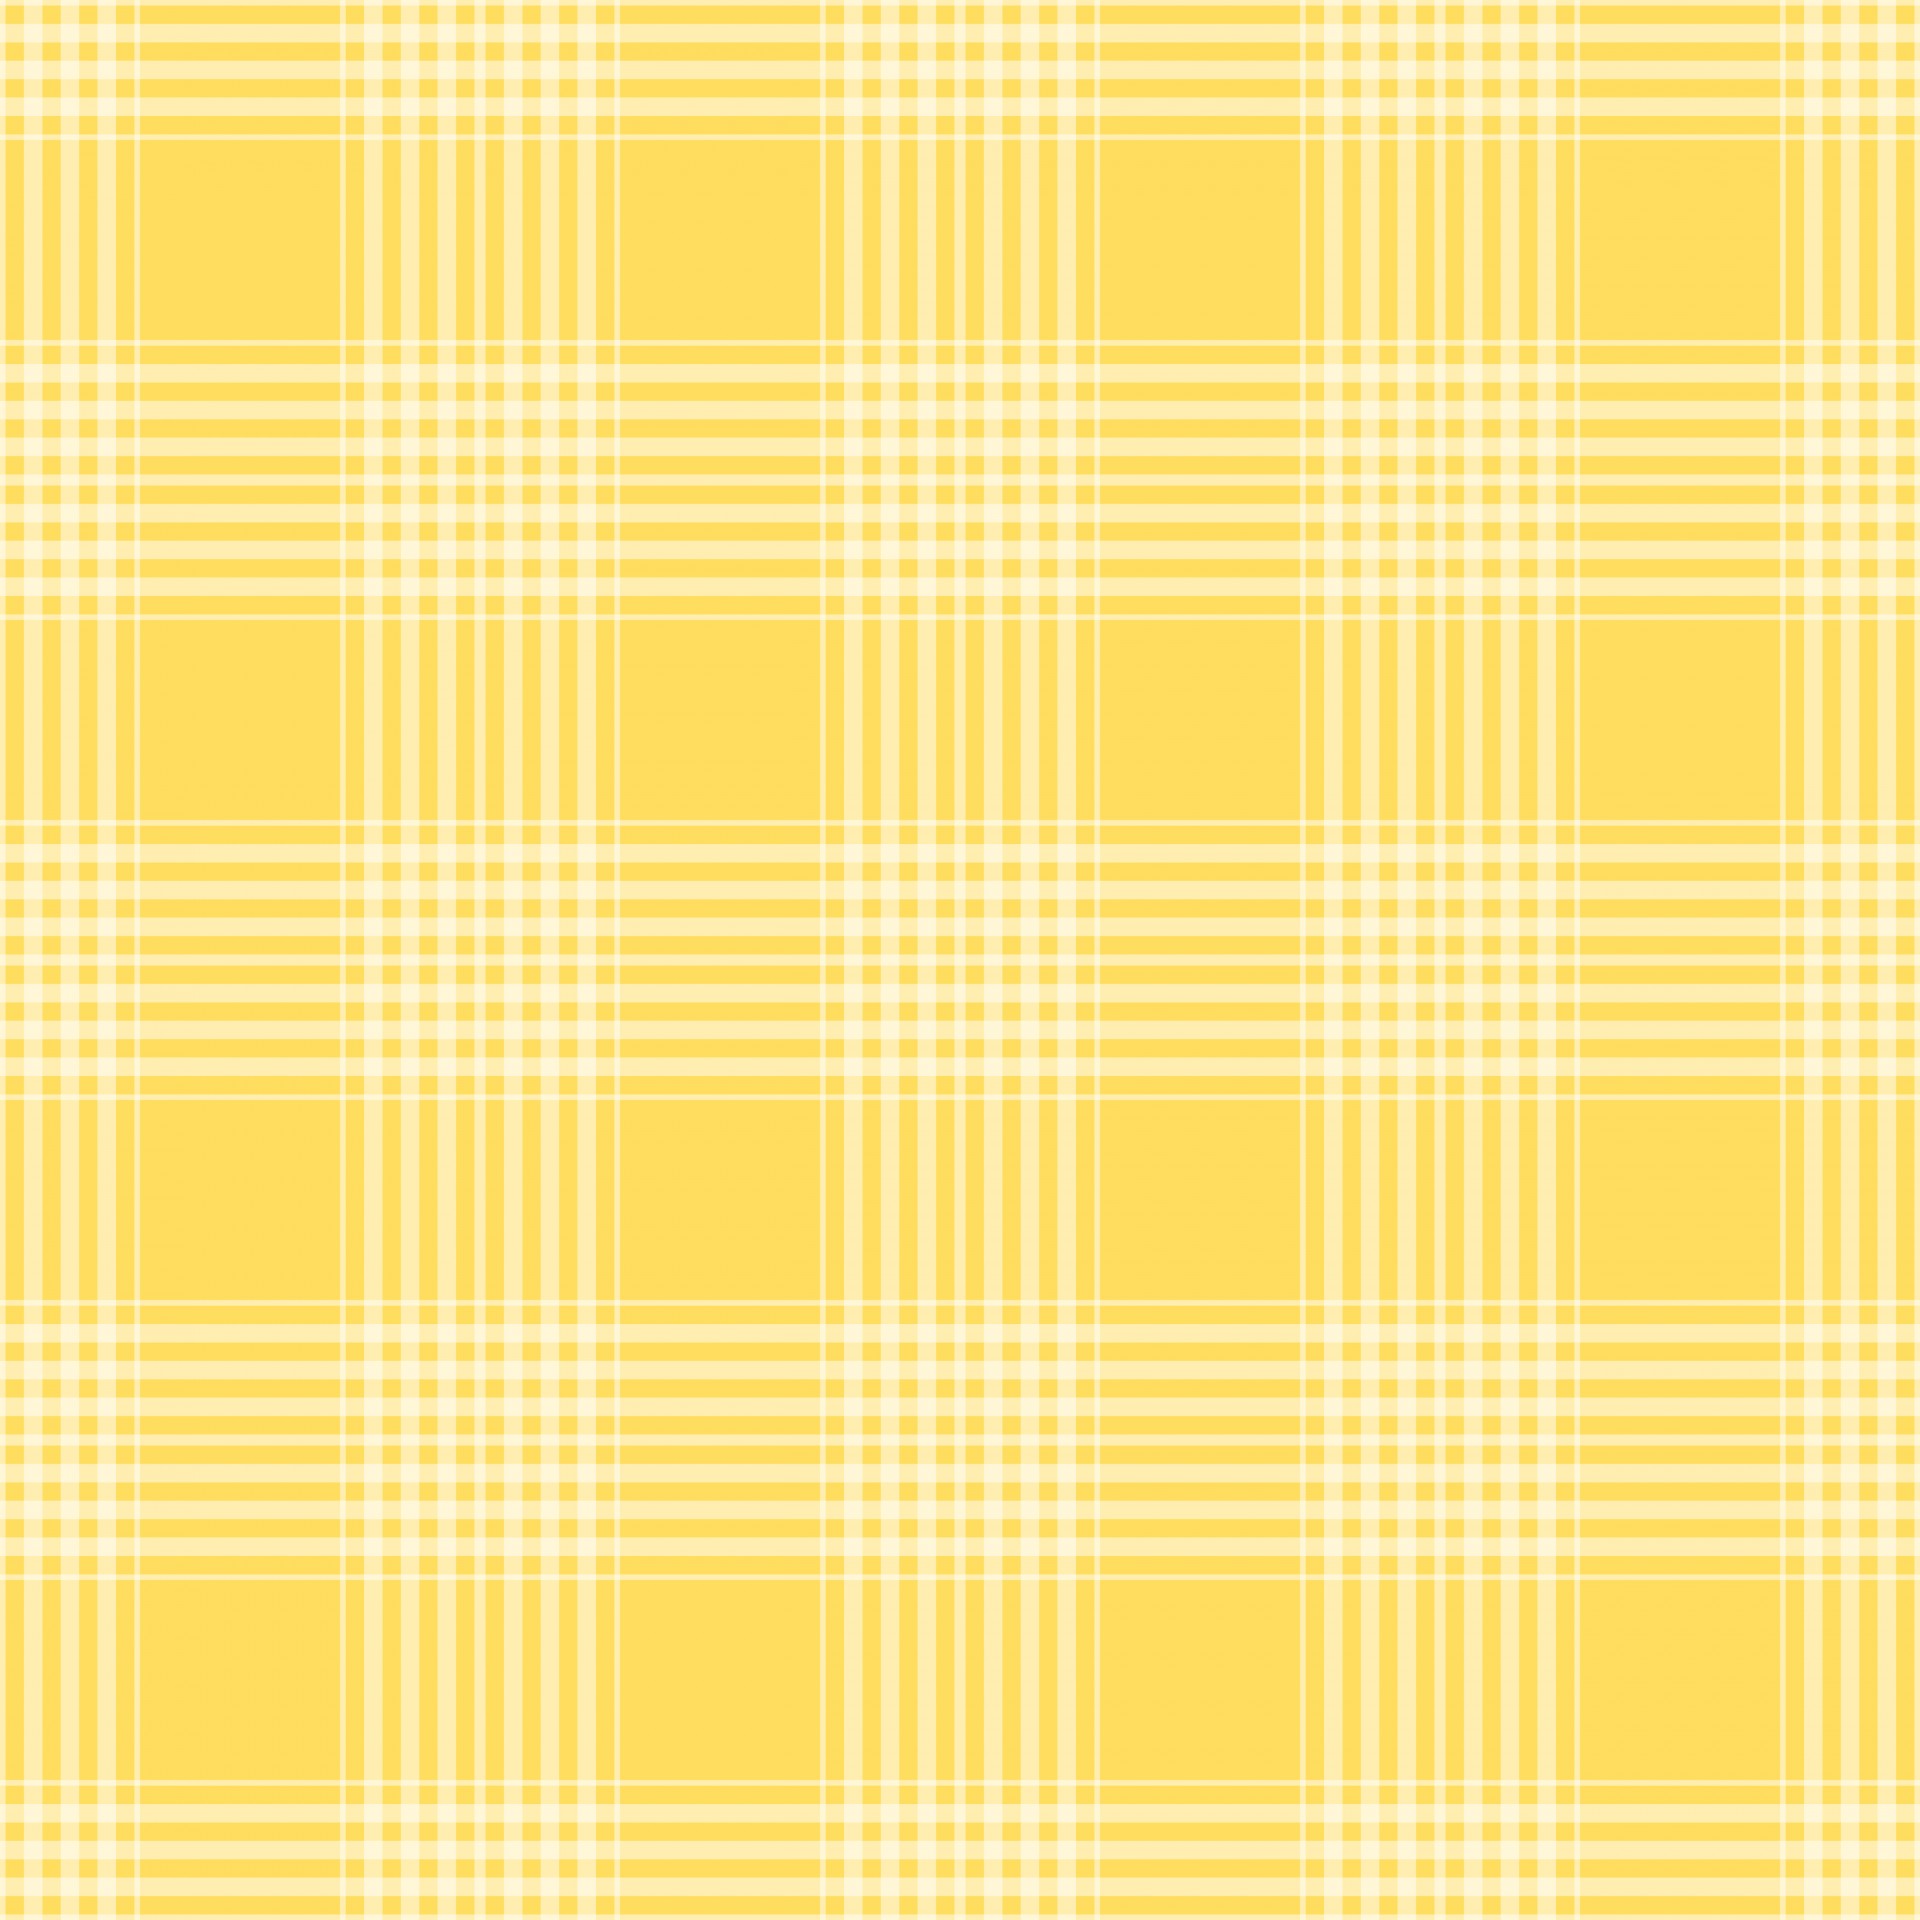 Checks,tartan,plaid,diagonal,yellow - free image from, fundo xadrez amarelo  